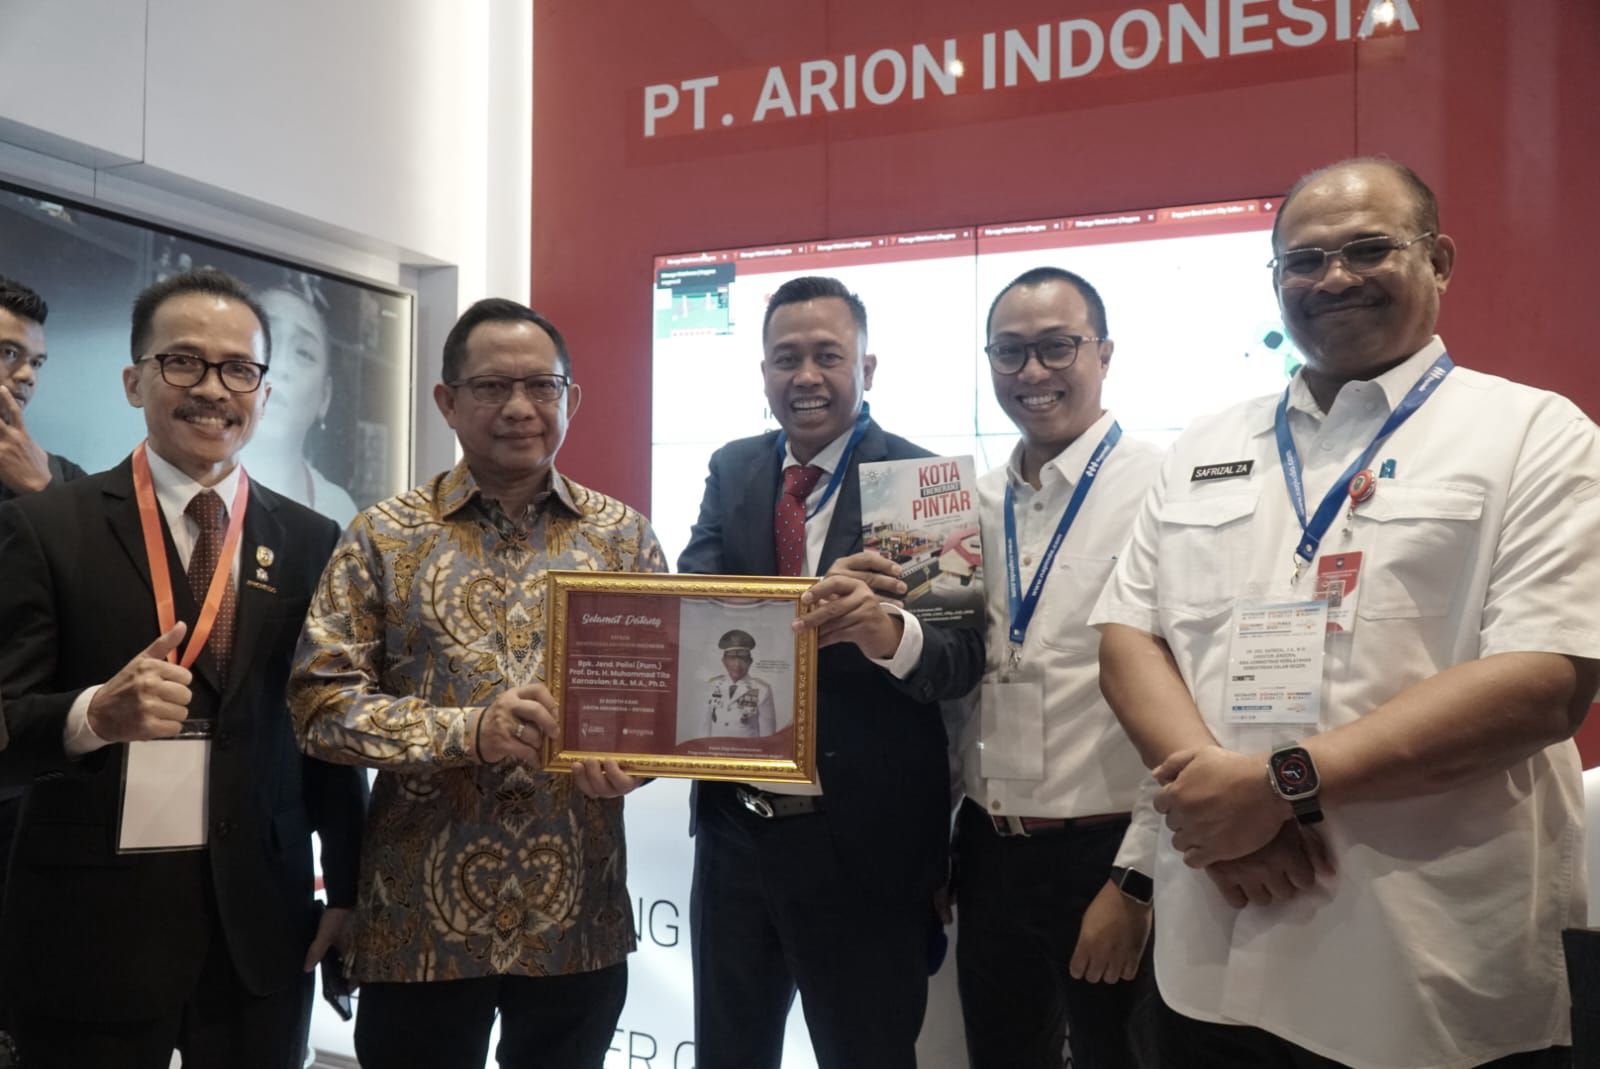 Tito Karnavian (baju batik) saat kunjungan di booth PT Arion Indonesia. (rad)